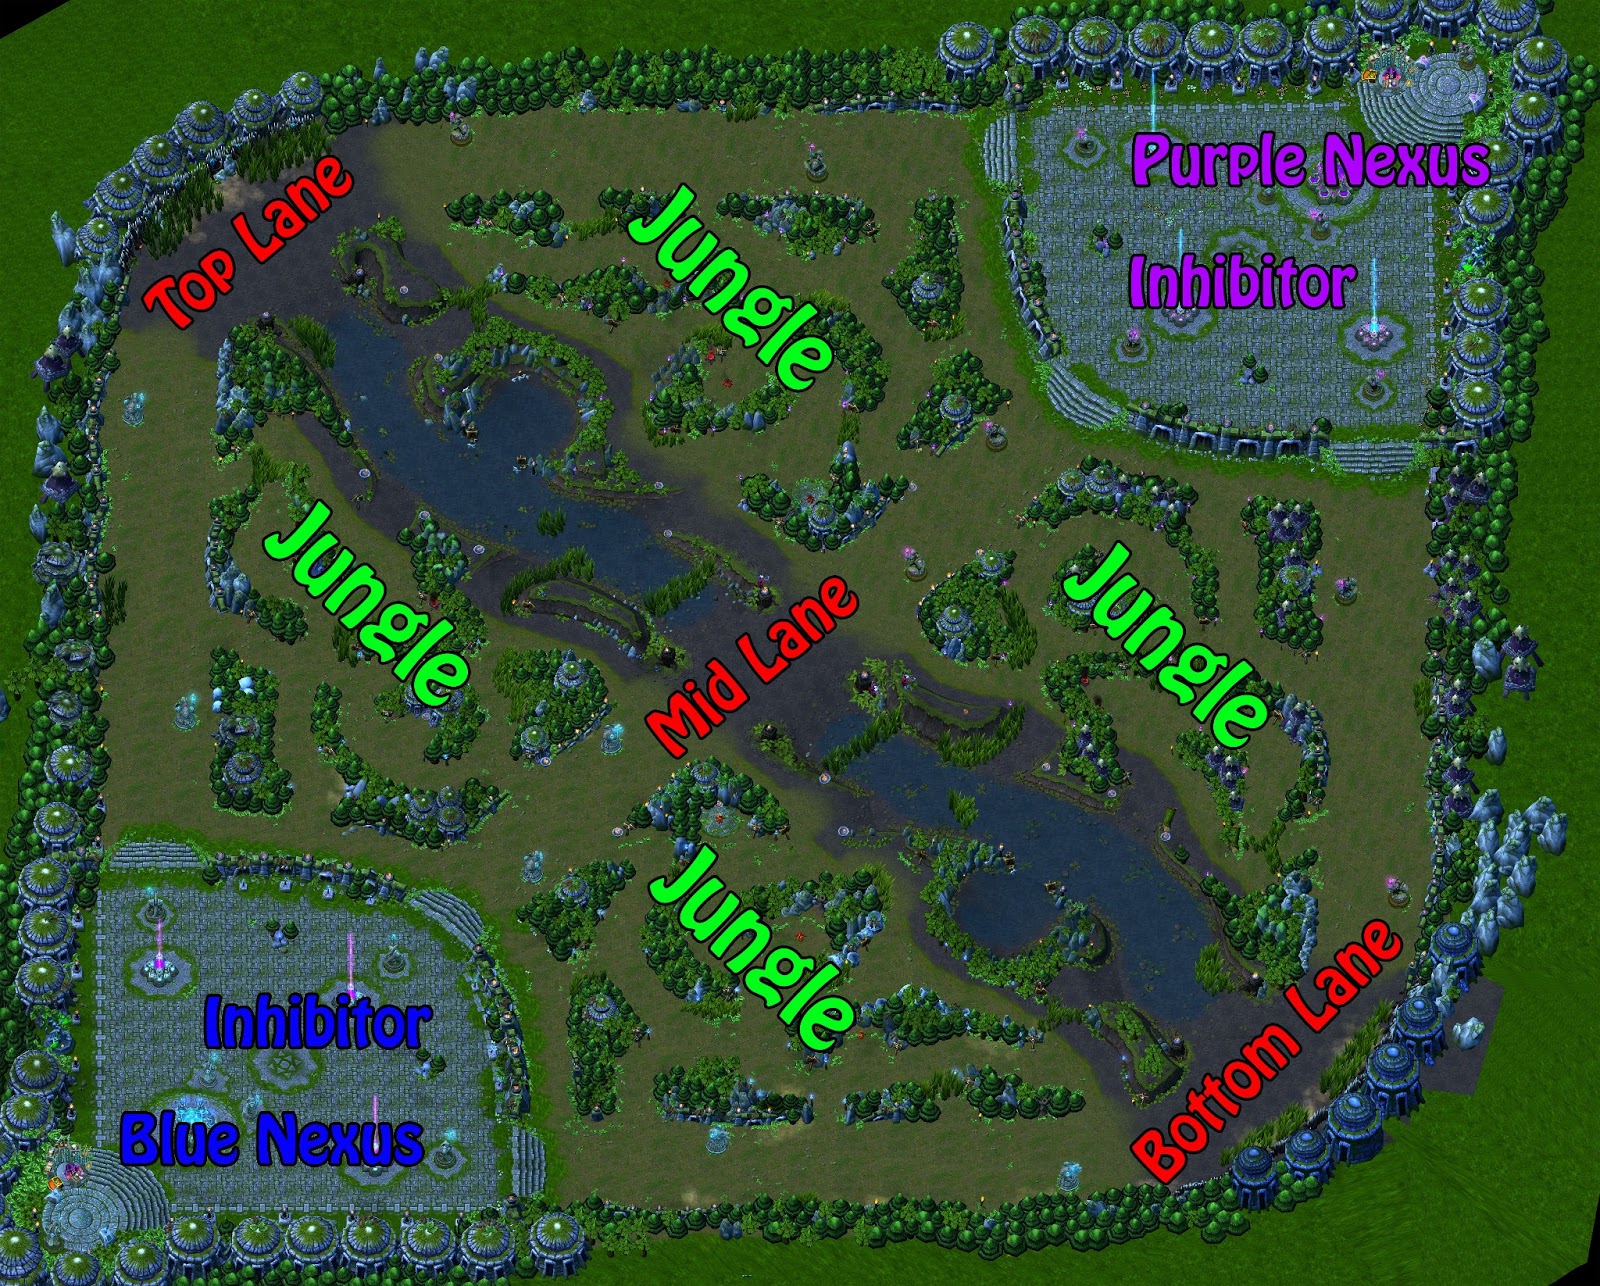 League of Legends Summoner's Rift Map